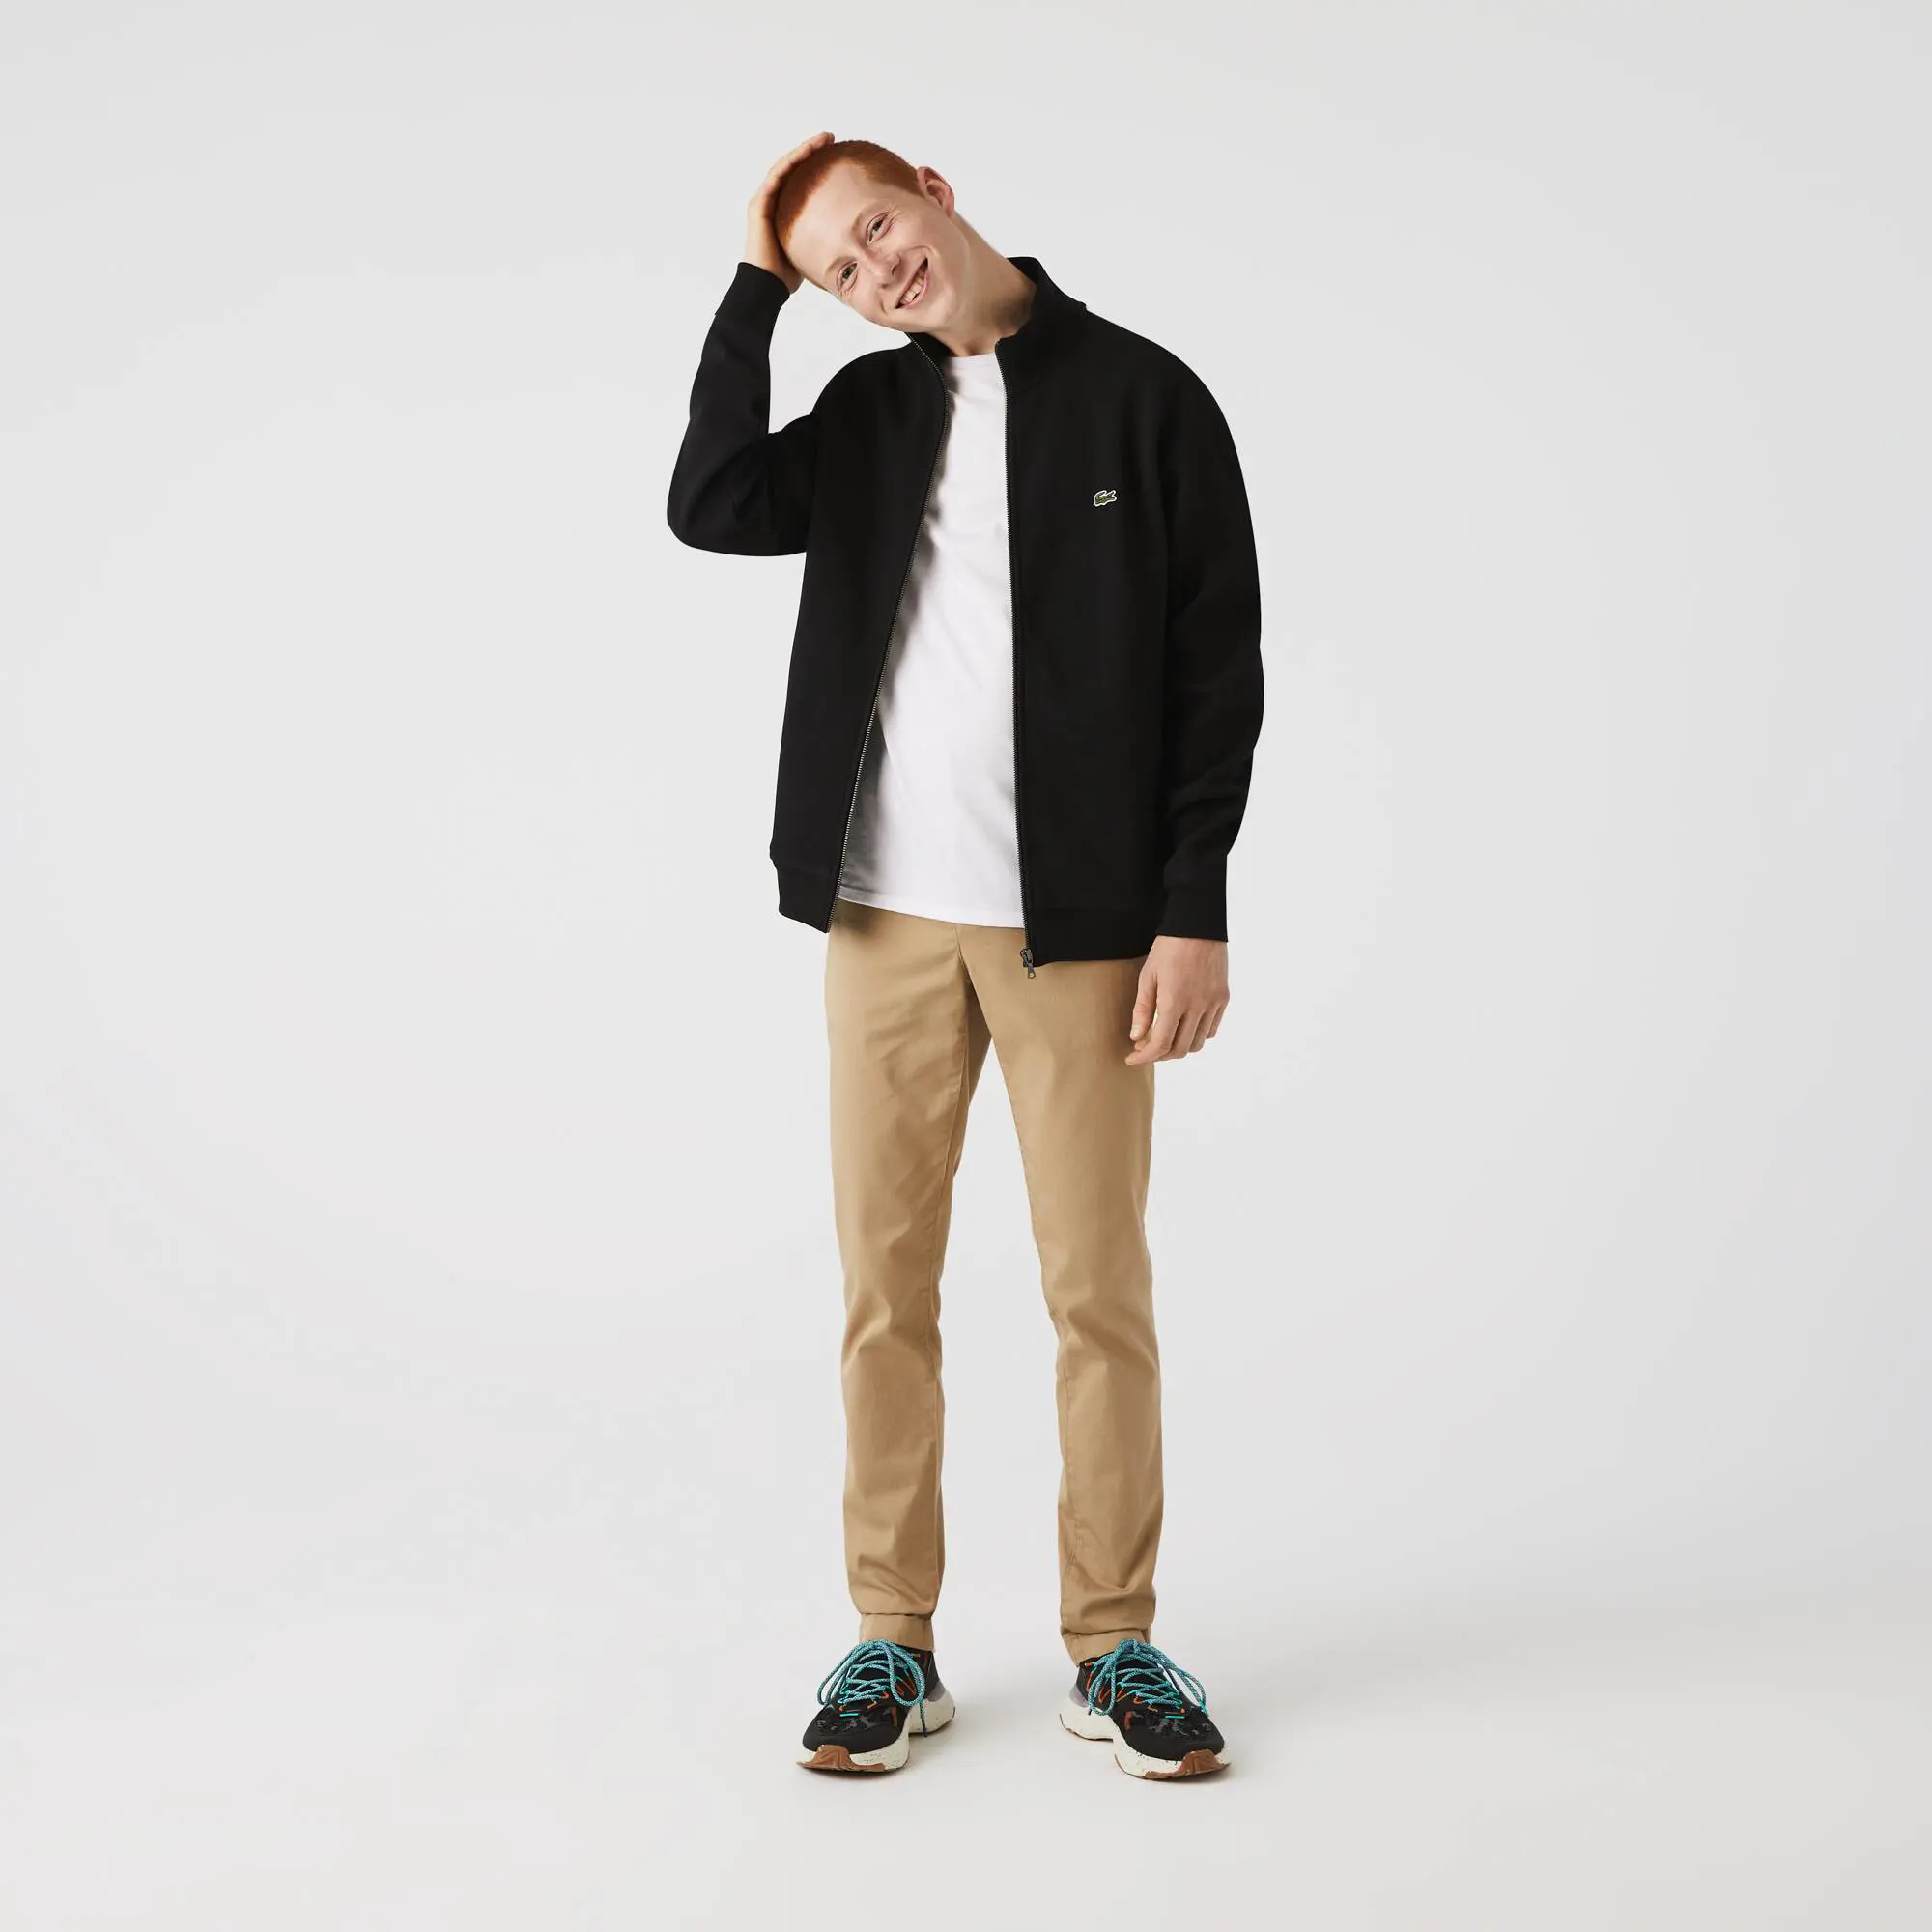 Lacoste Men's Zip-Up Piqué Fleece Jacket. 1